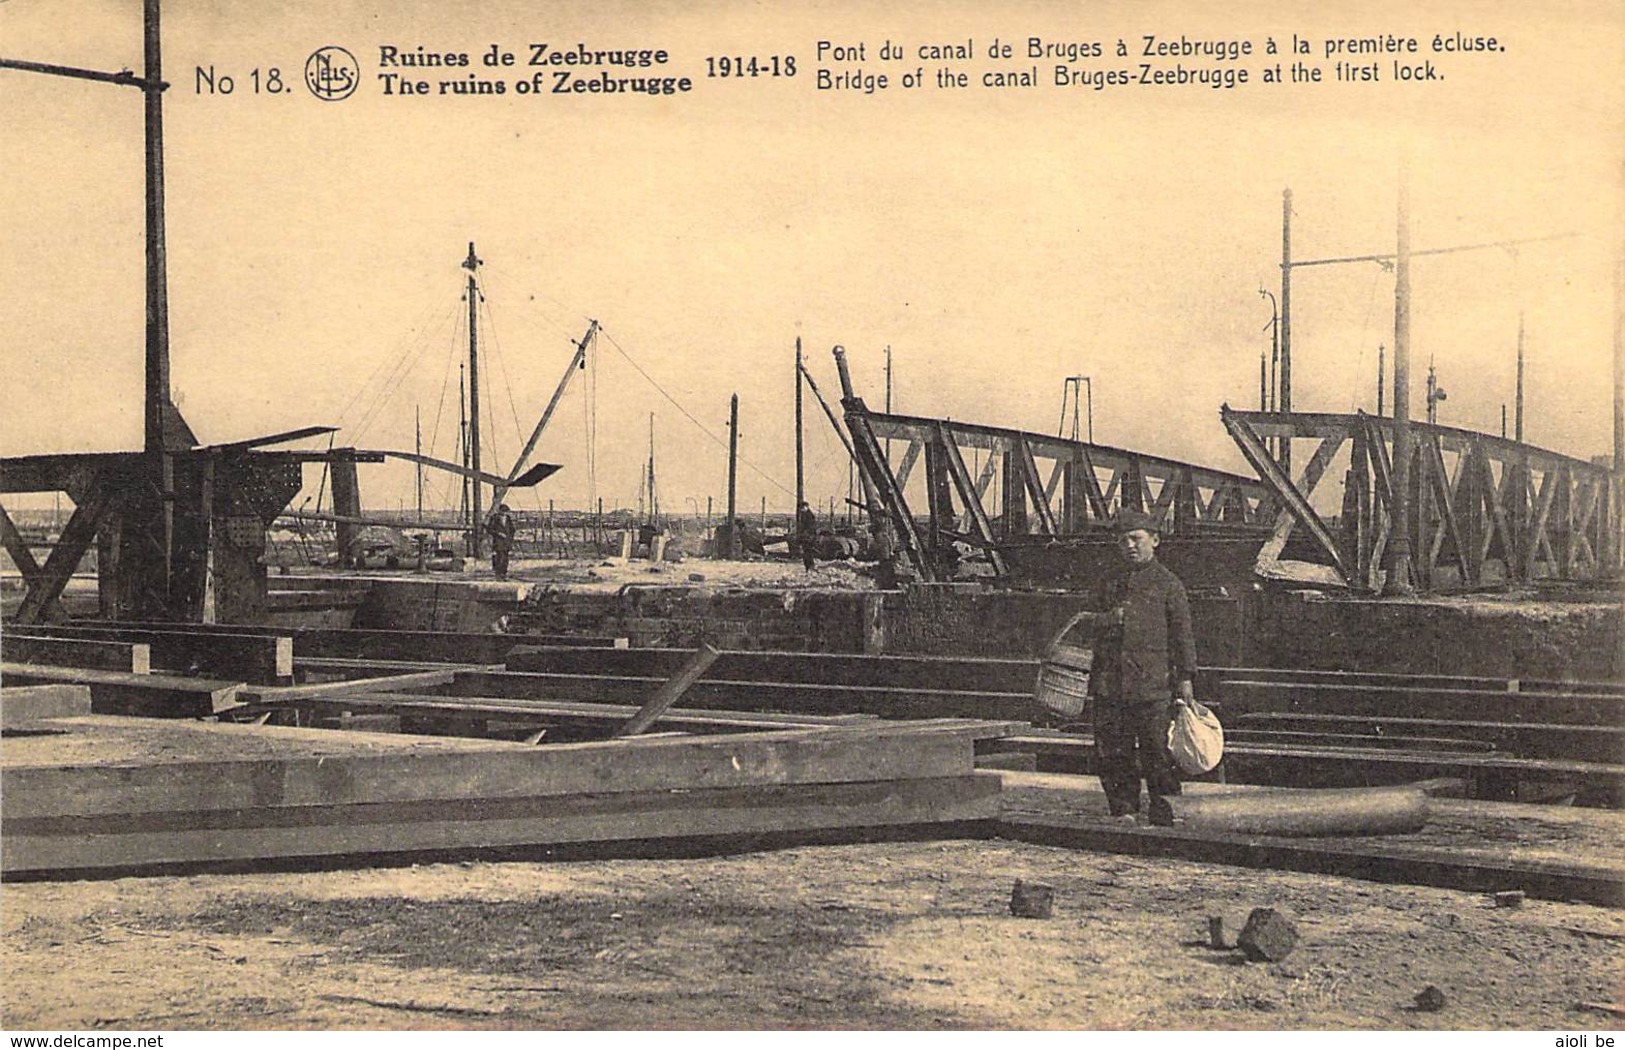 Ruines De Zeebrugge The Ruins. 1914-18 Pont Du Canal De Brugesà Zeebrugge à La Première écluse. - Guerre 1914-18